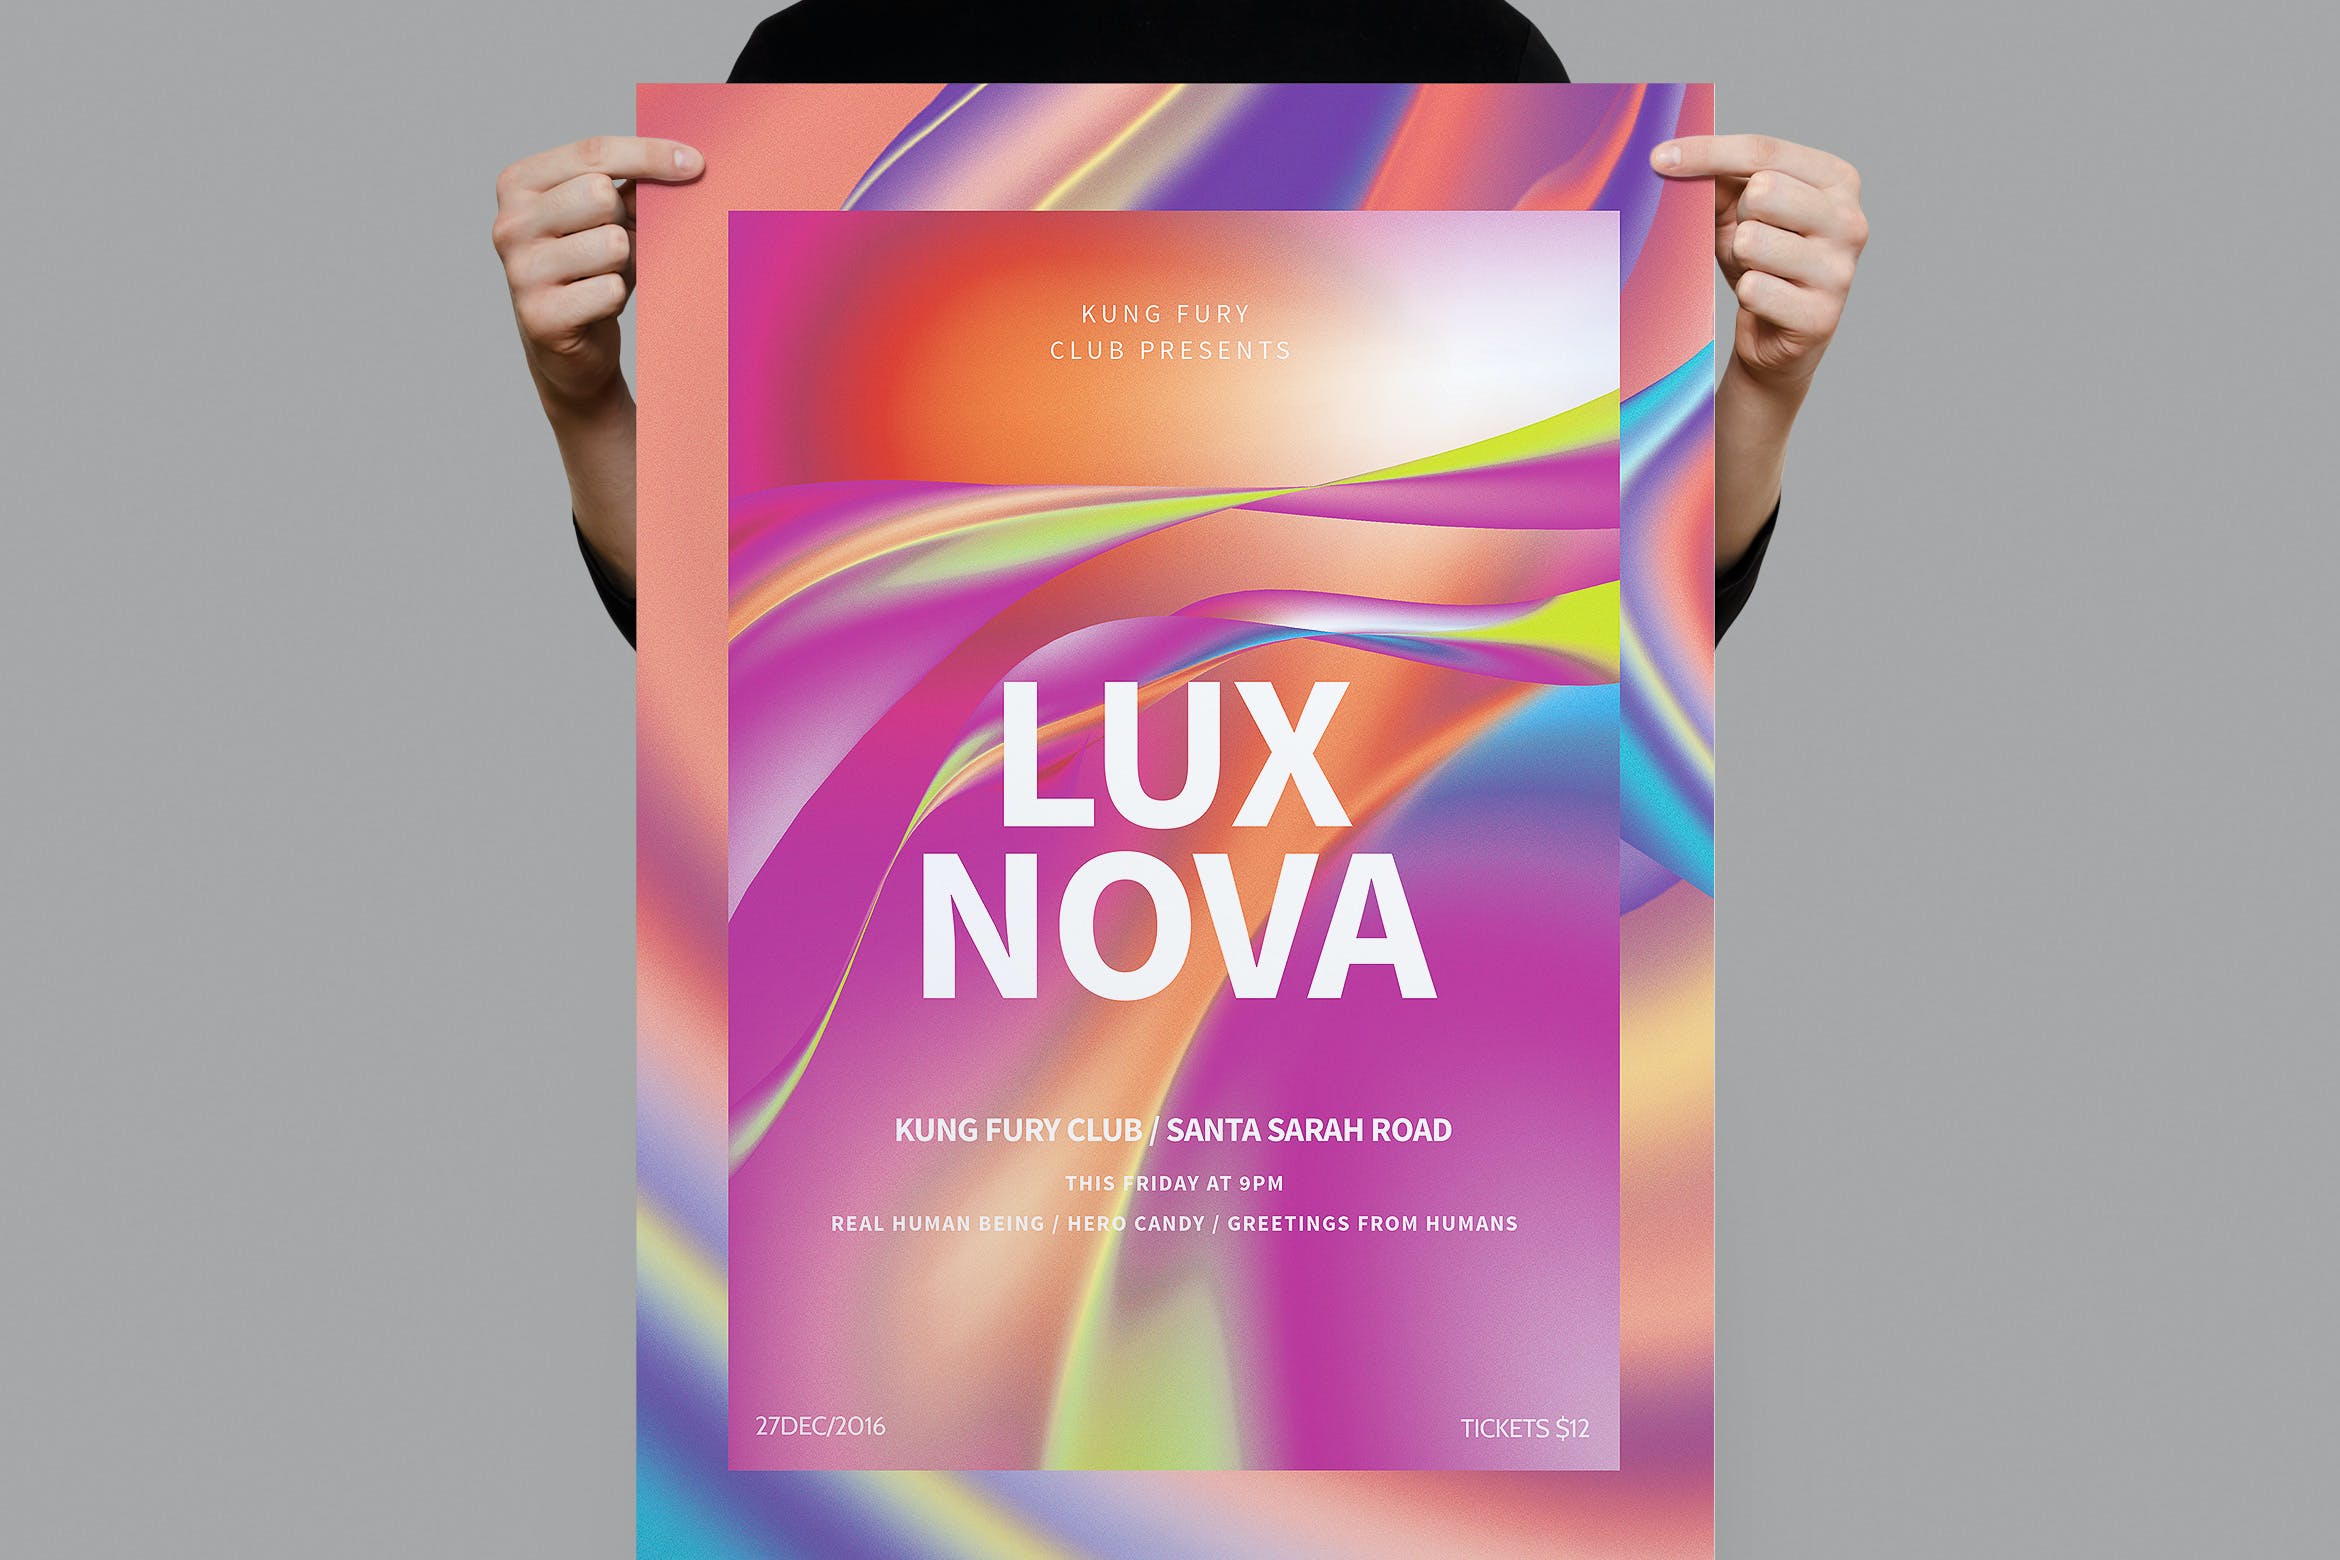 全息几何渐变效果海报/传单设计模板 Lux Nova Poster / Flyer设计素材模板